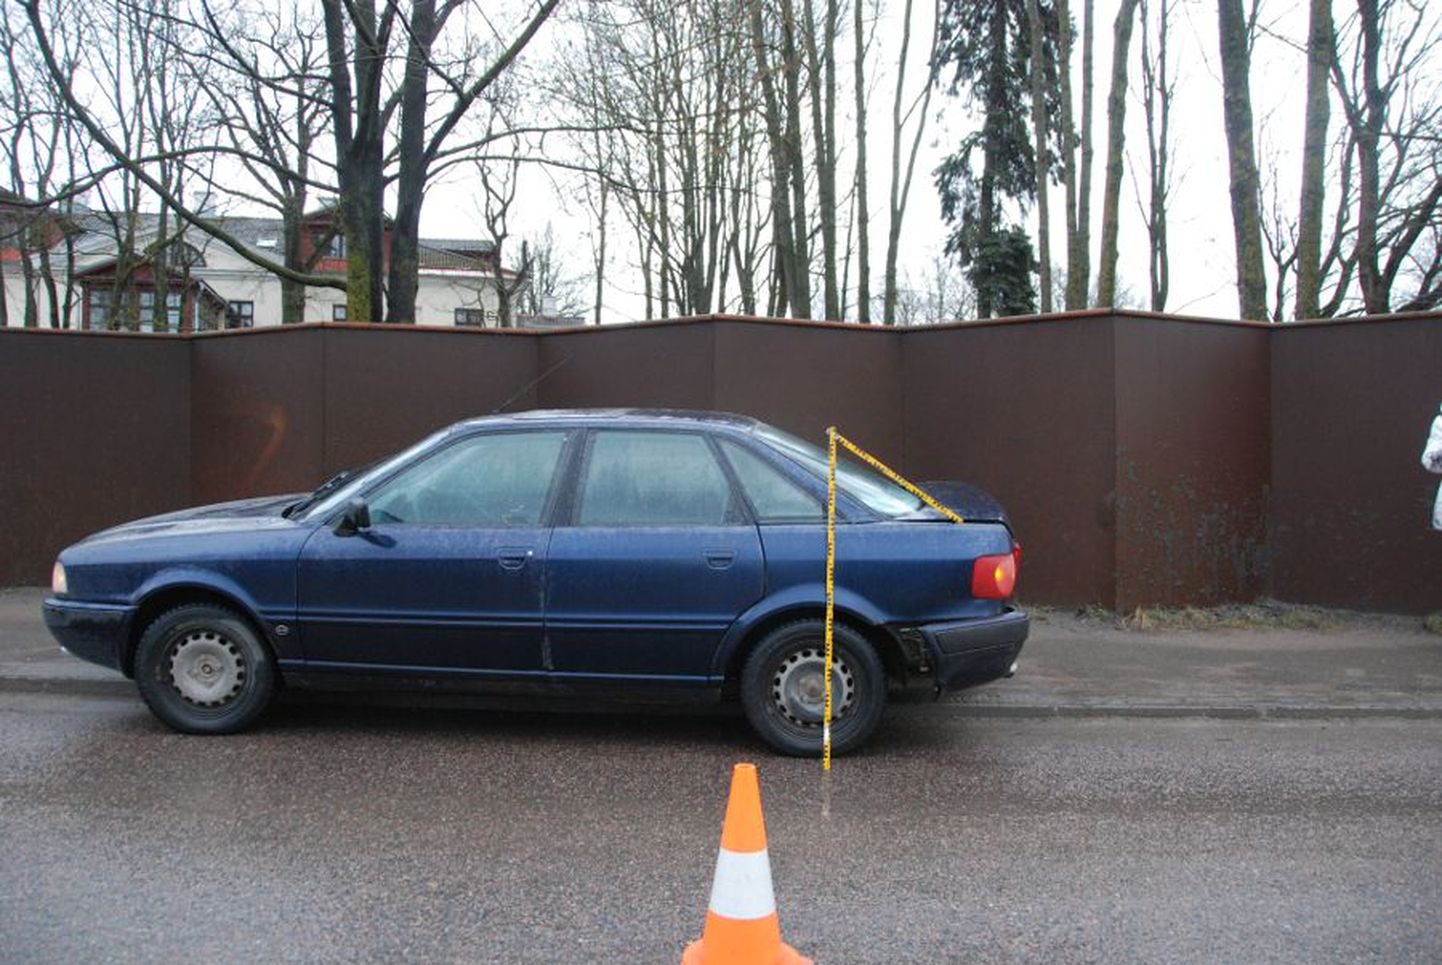 Автомобиль оранжевого цвета протаранил Audi и скрылся с места происшествия.